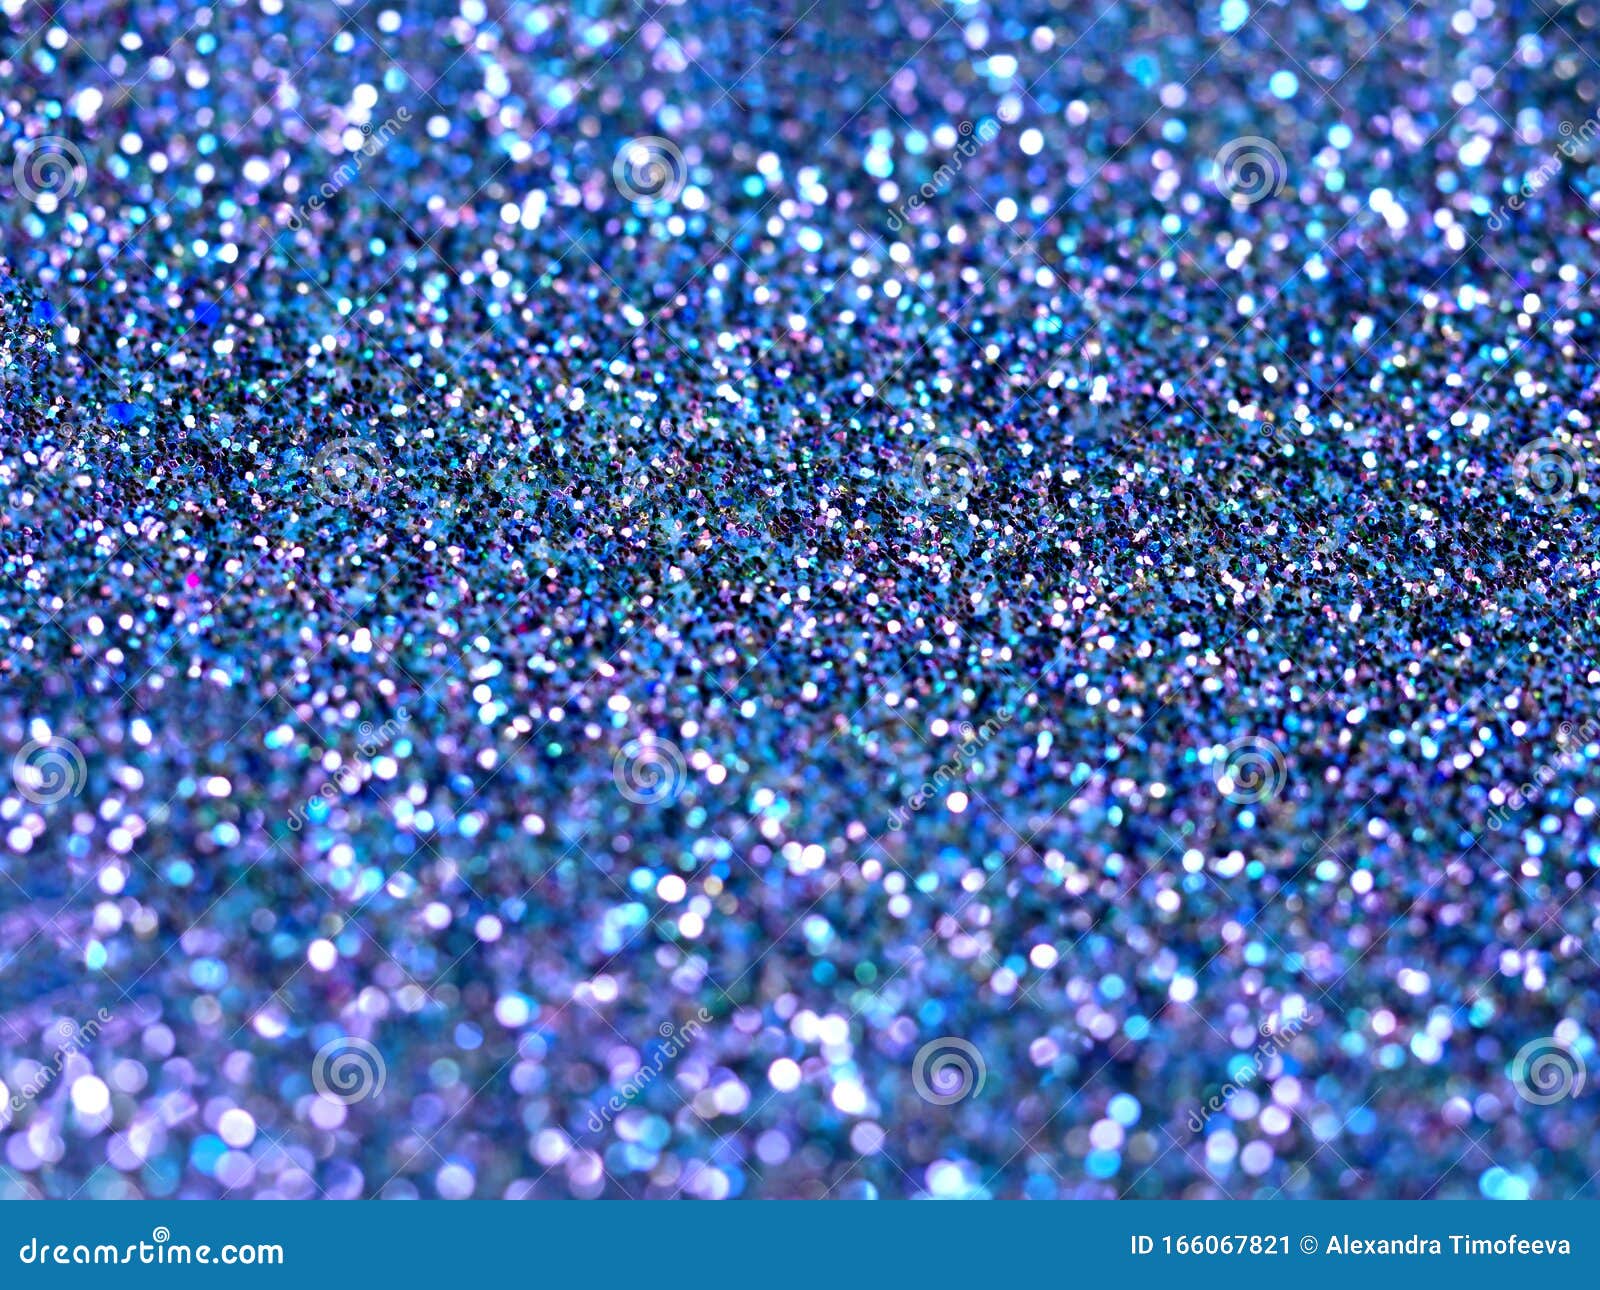 aanvaarden salami musical Blauwe Glitter Abstracte Achtergrond Stock Afbeelding - Image of effect,  mooi: 166067821